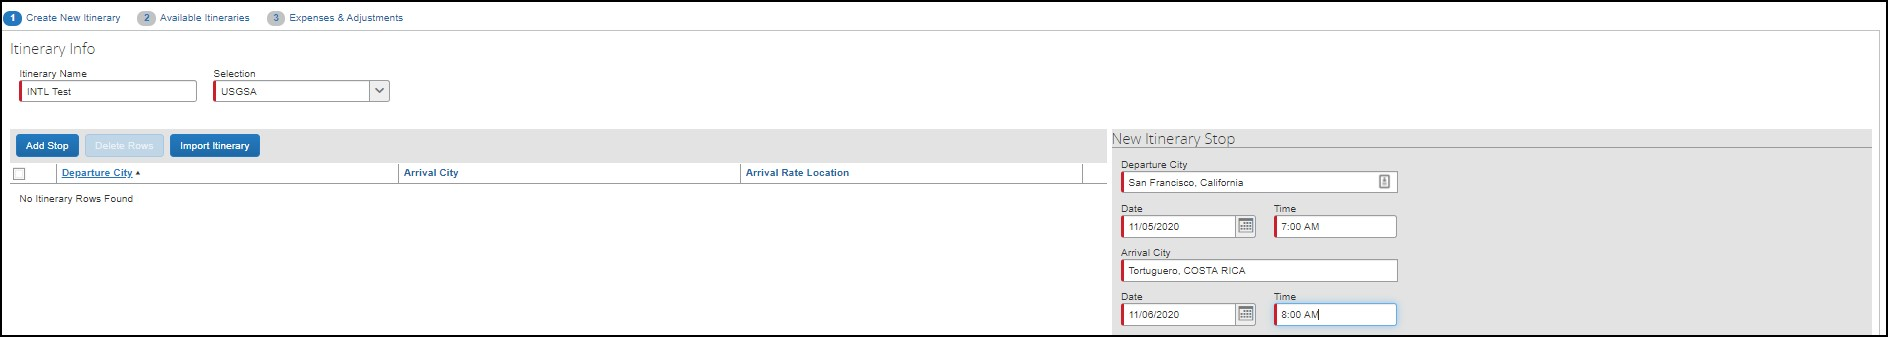 screenshot showing Travel Allowances window